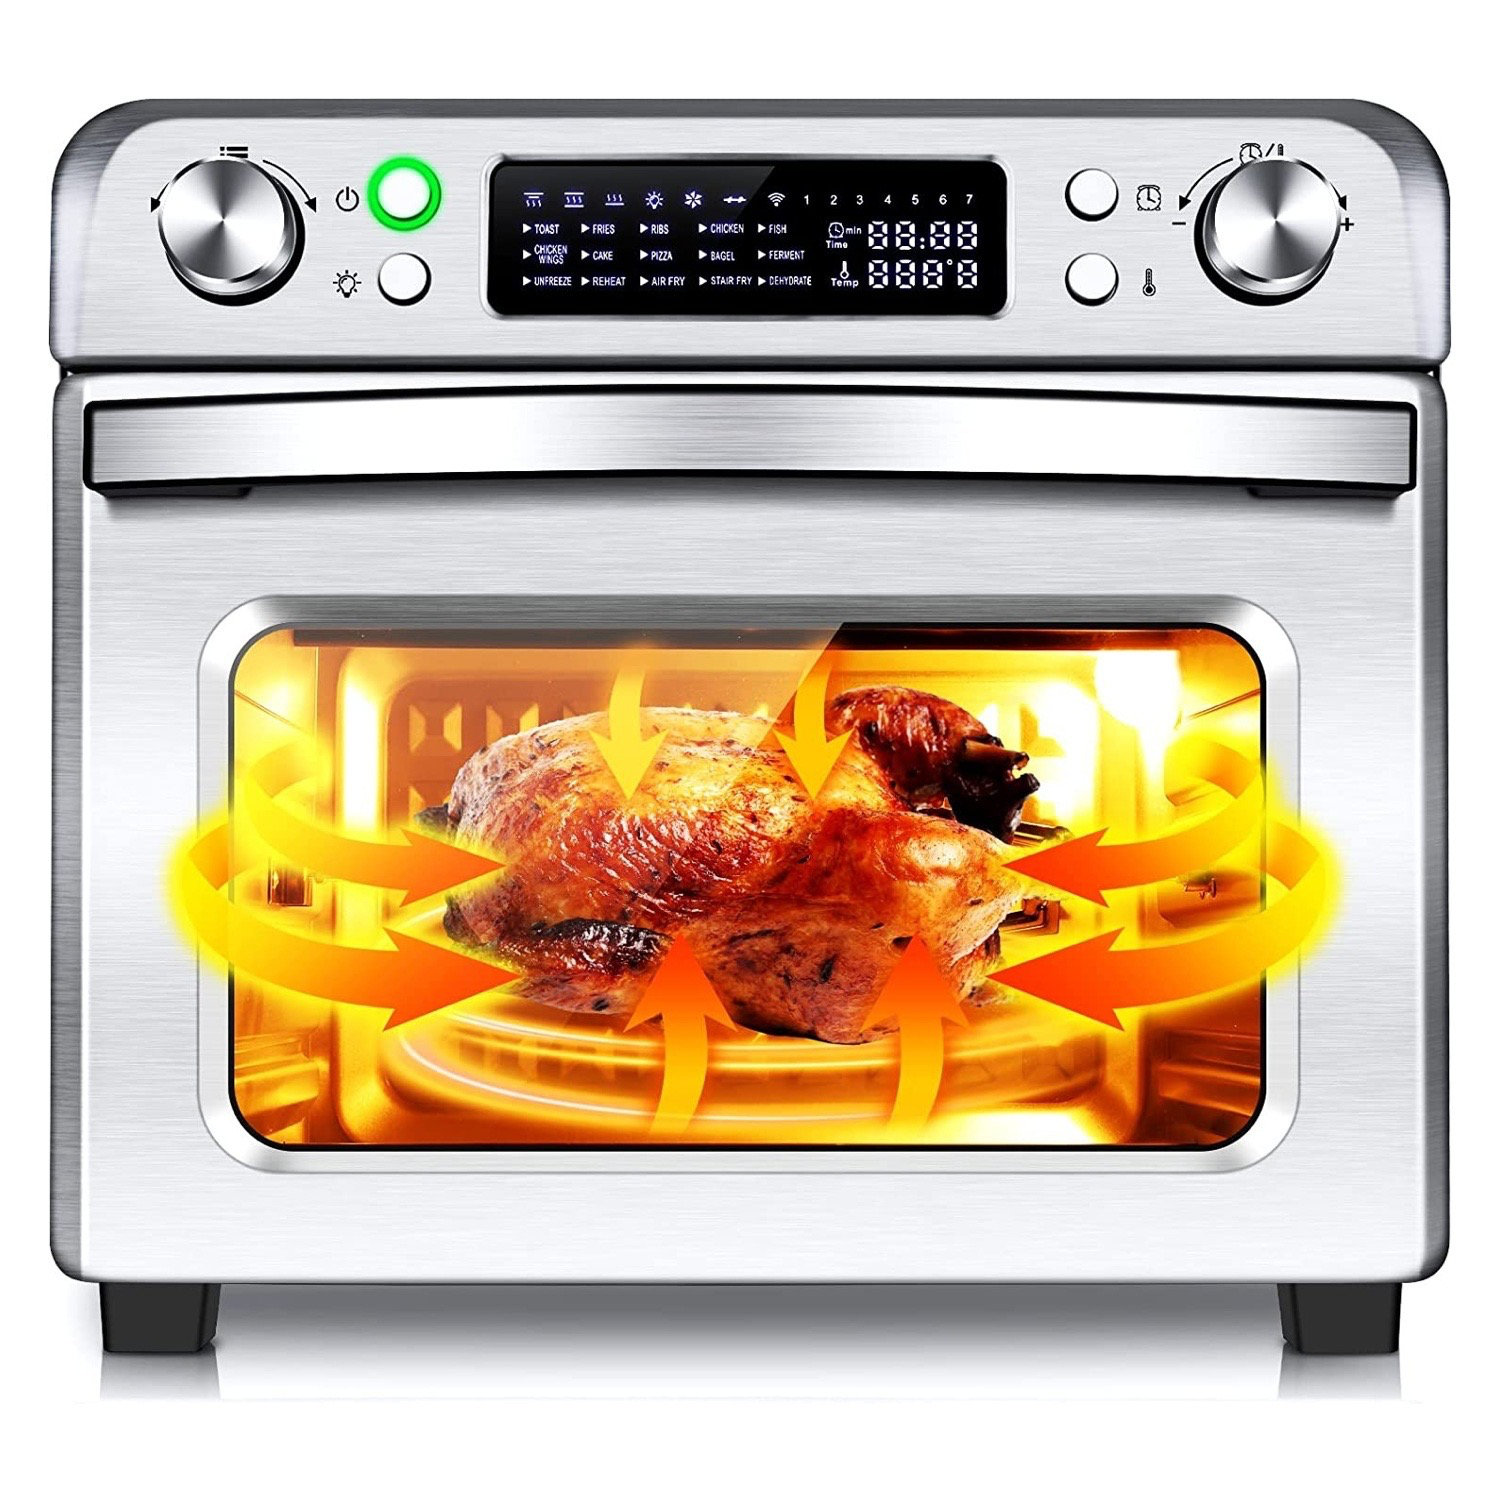 https://assets.wfcdn.com/im/02316205/compr-r85/2267/226795880/265-qt-air-fryer-15-in-1-air-fryer-toaster-oven.jpg